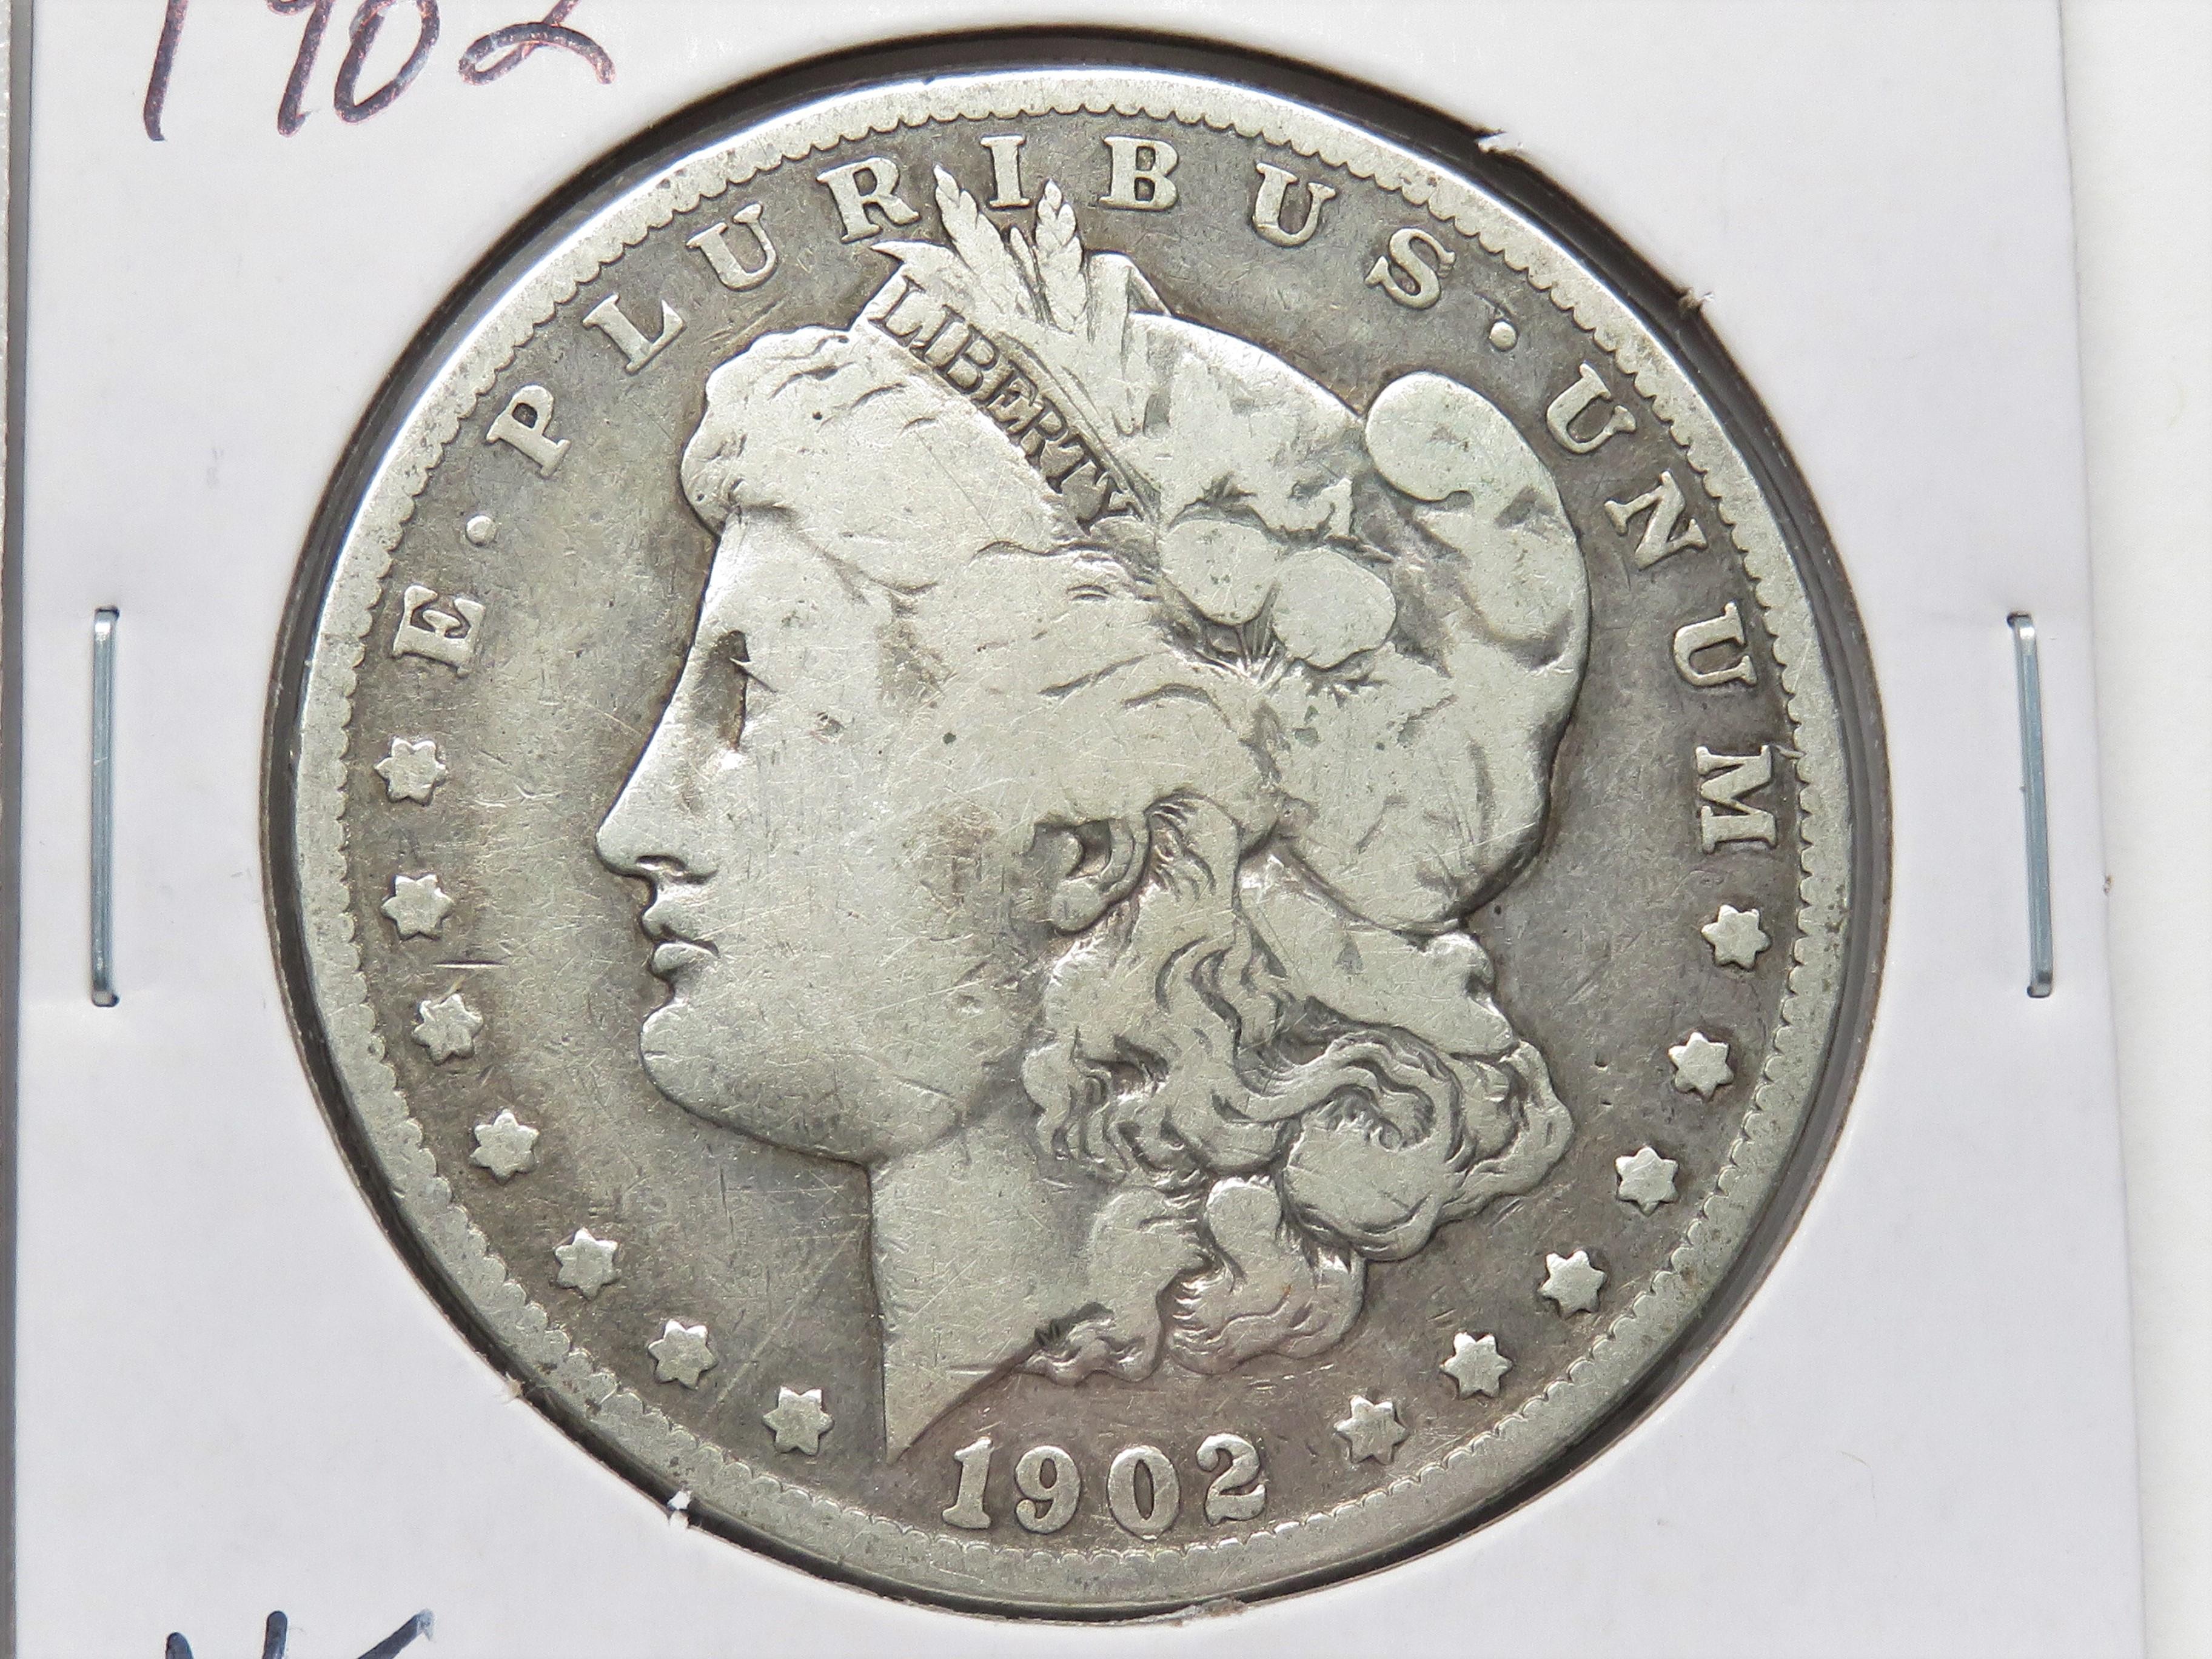 3 Morgan $: 1889-O AG, 1901-O VG, 1902 VG